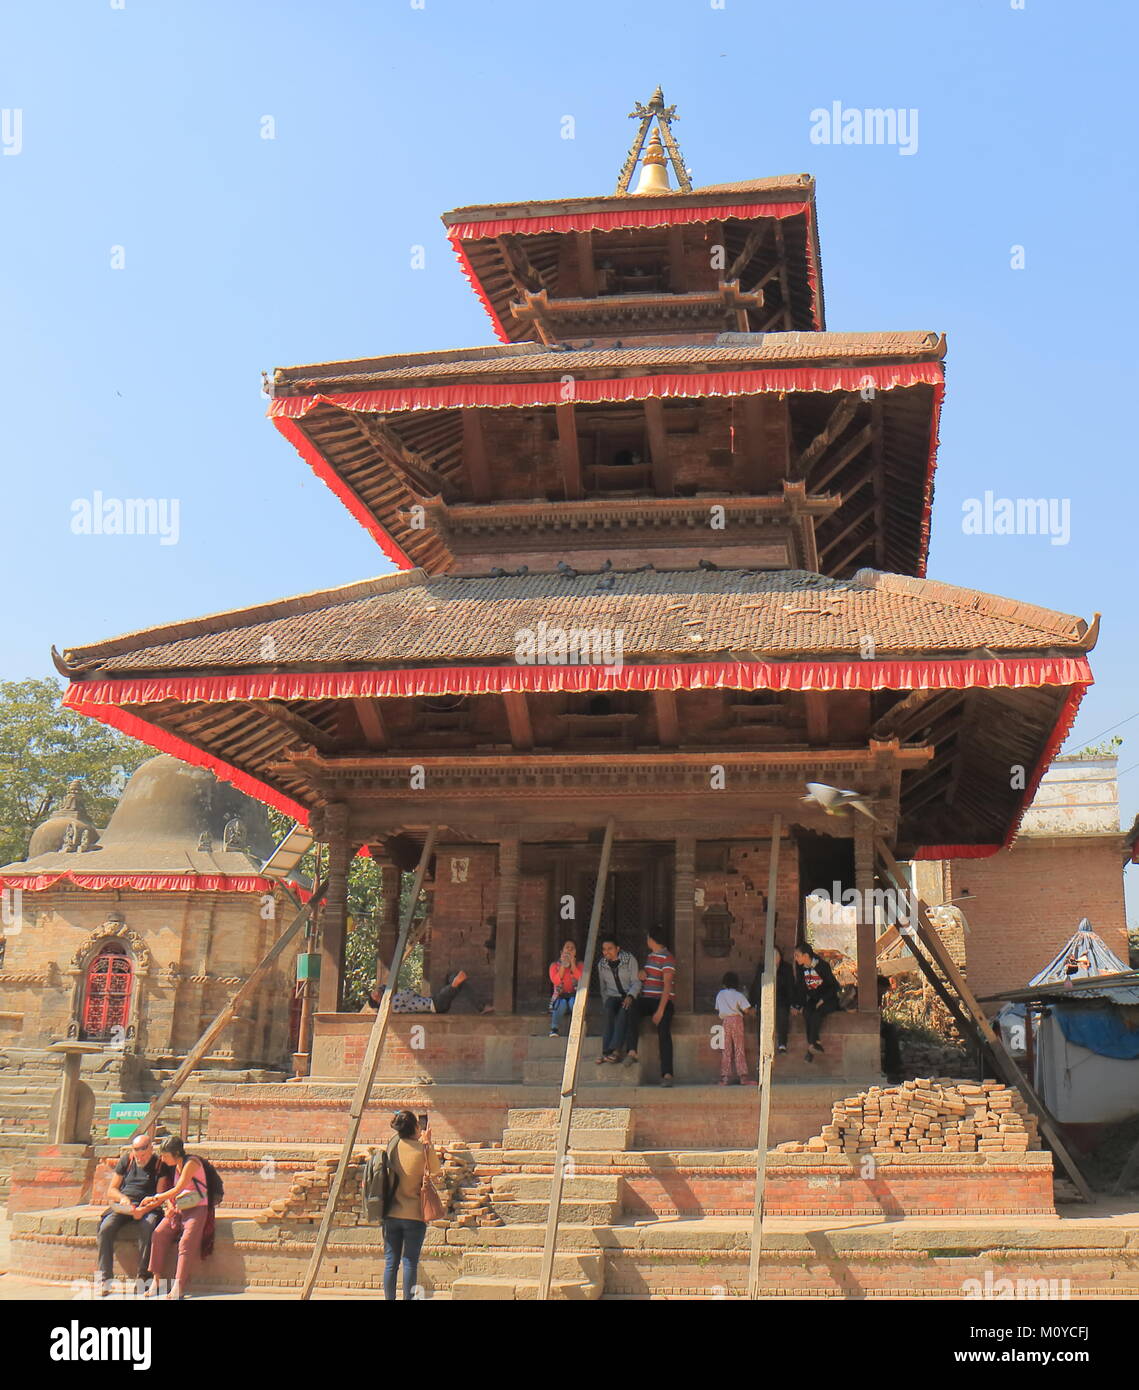 People visit Durbar Square in Kathmandu Nepal. Stock Photo